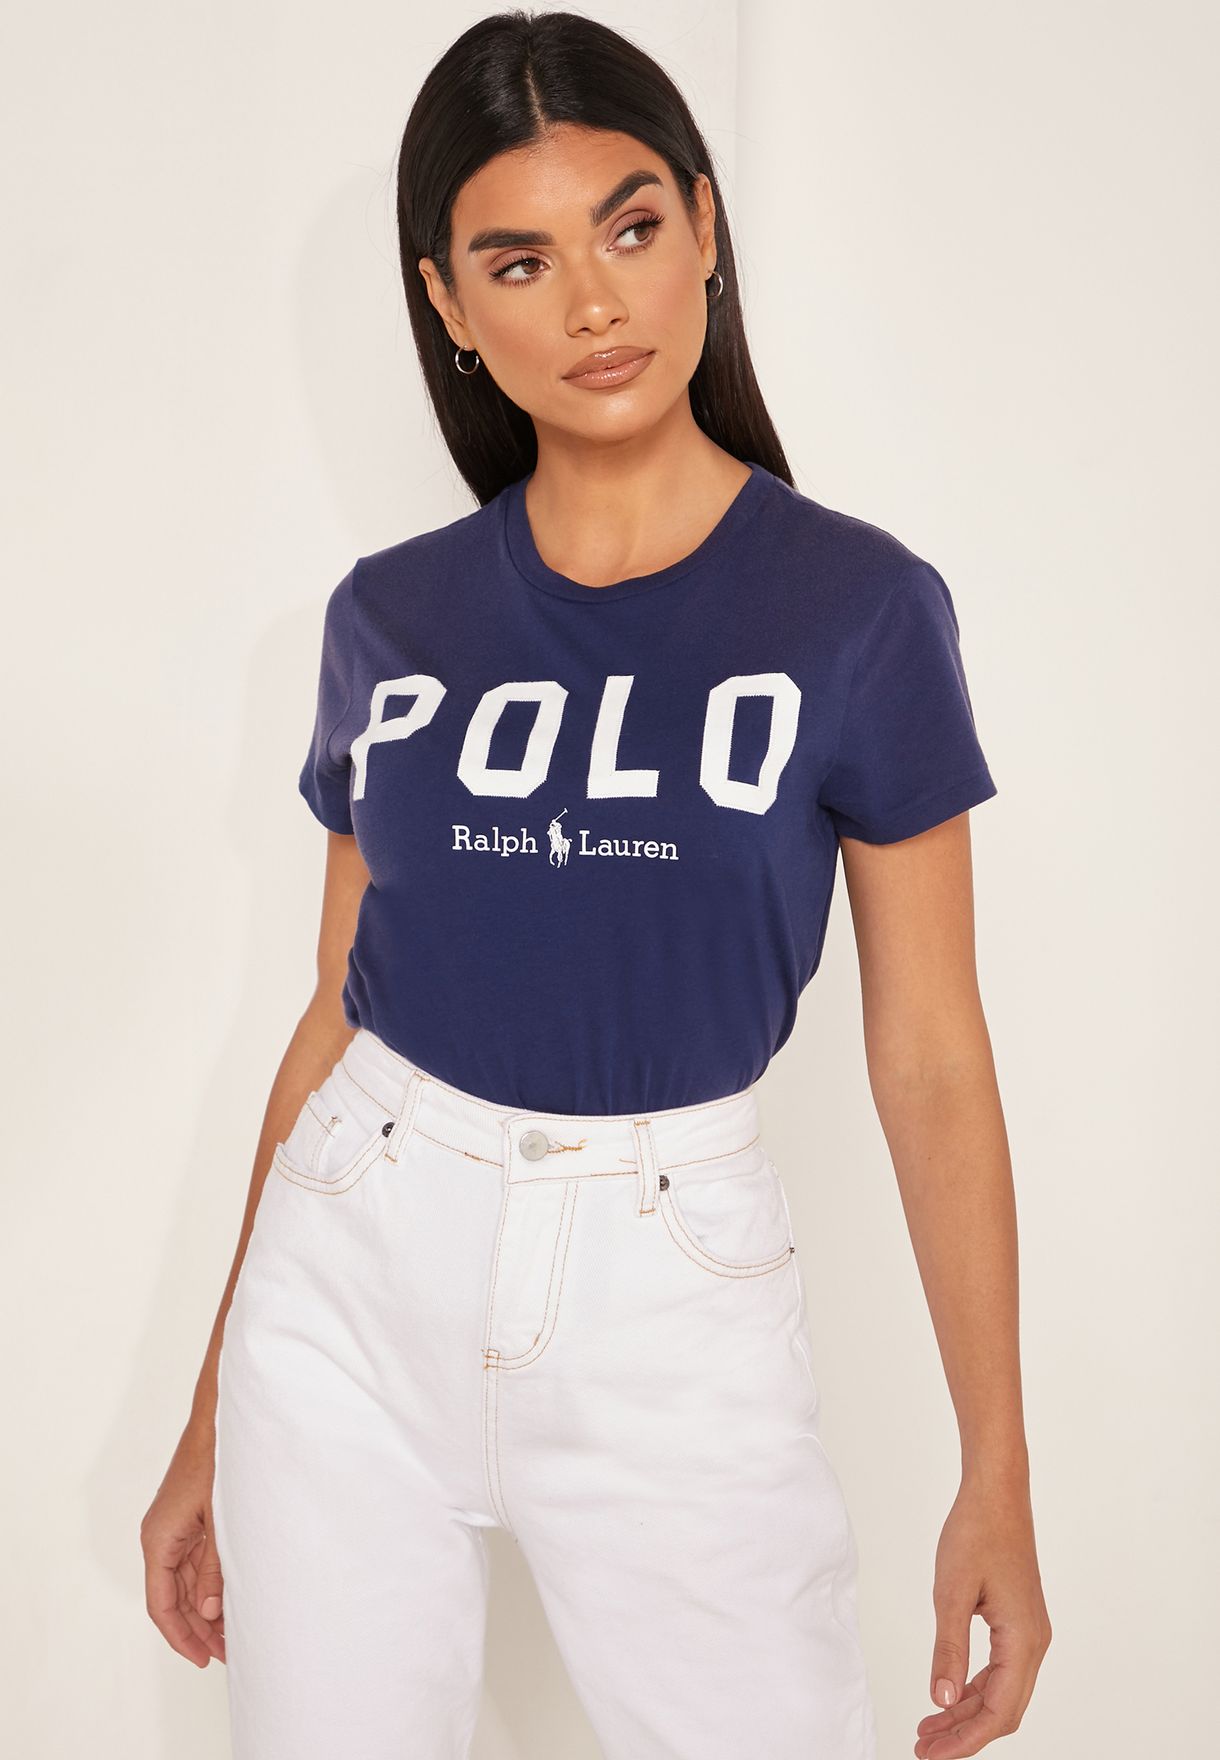 polo ralph lauren crew neck t shirt womens